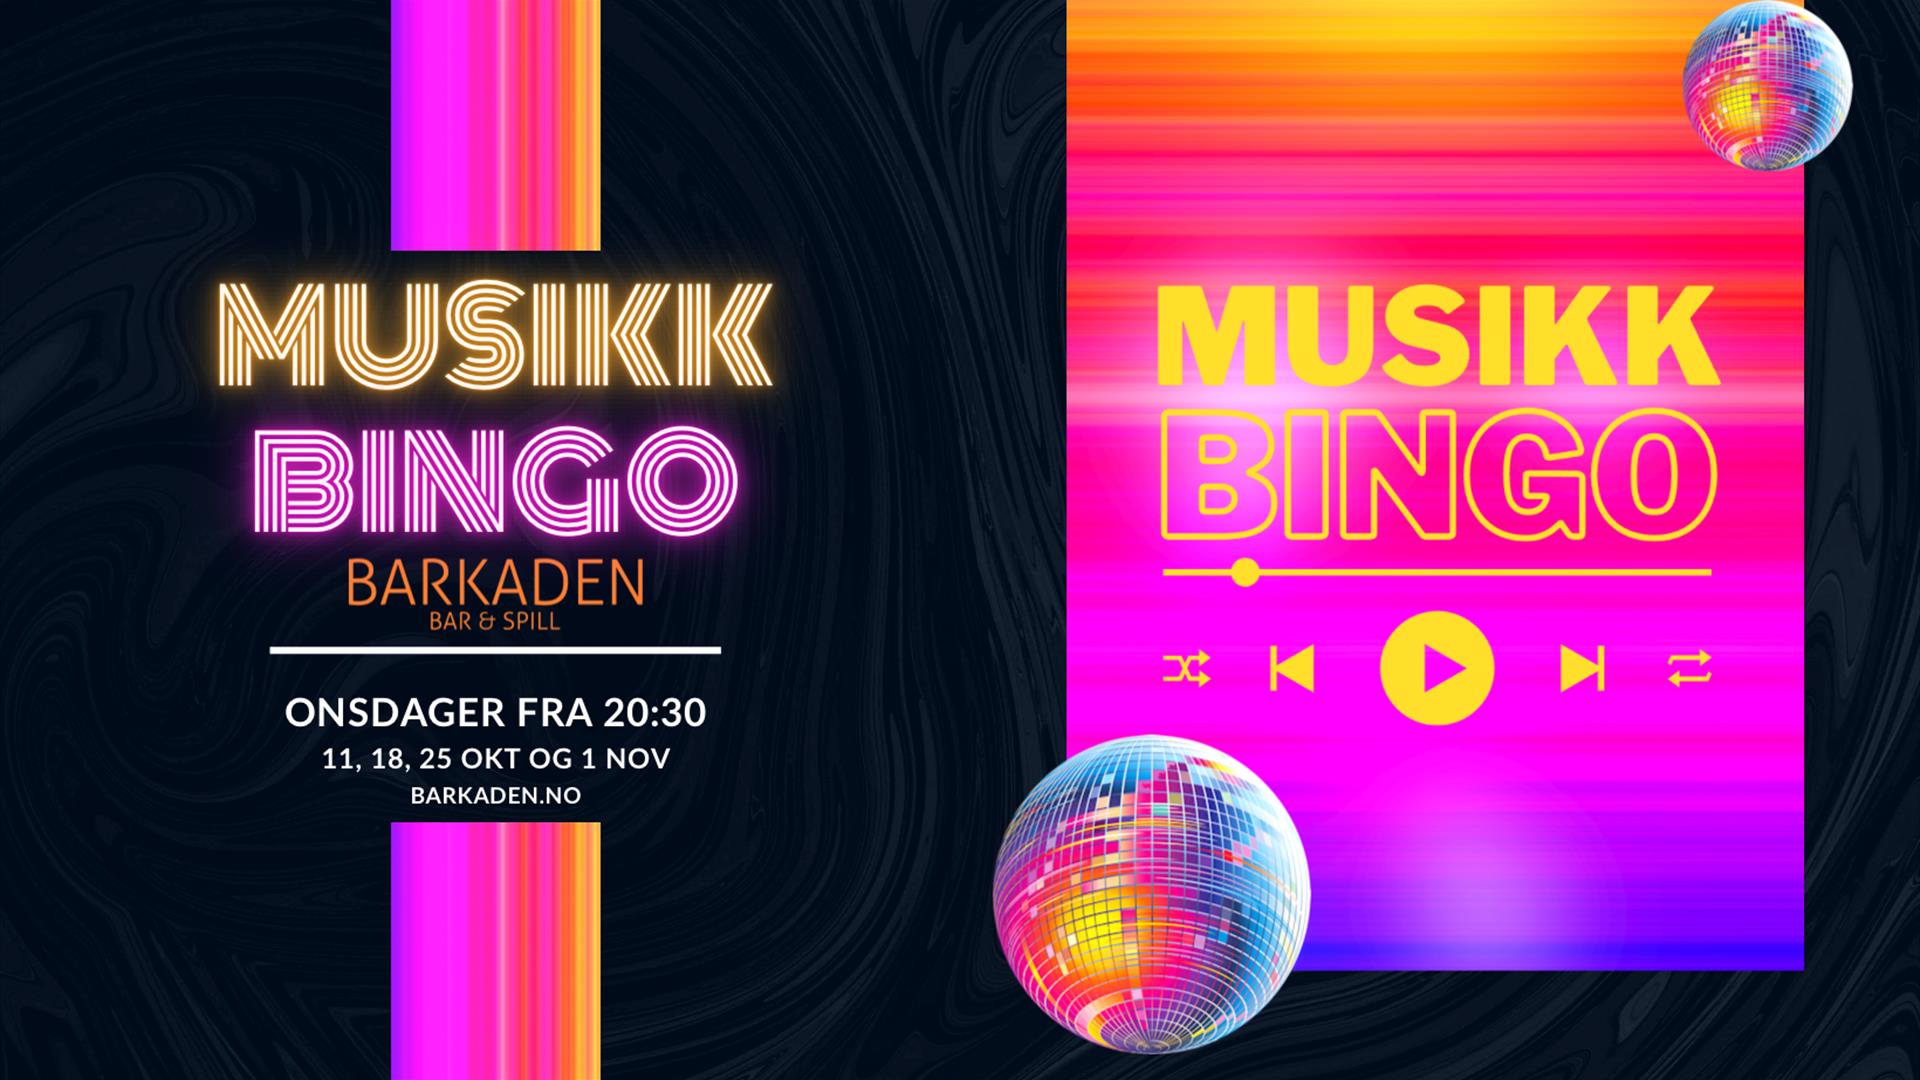 Velkommen til Musikkbingo onsdager klokken 20.30 på Barkaden